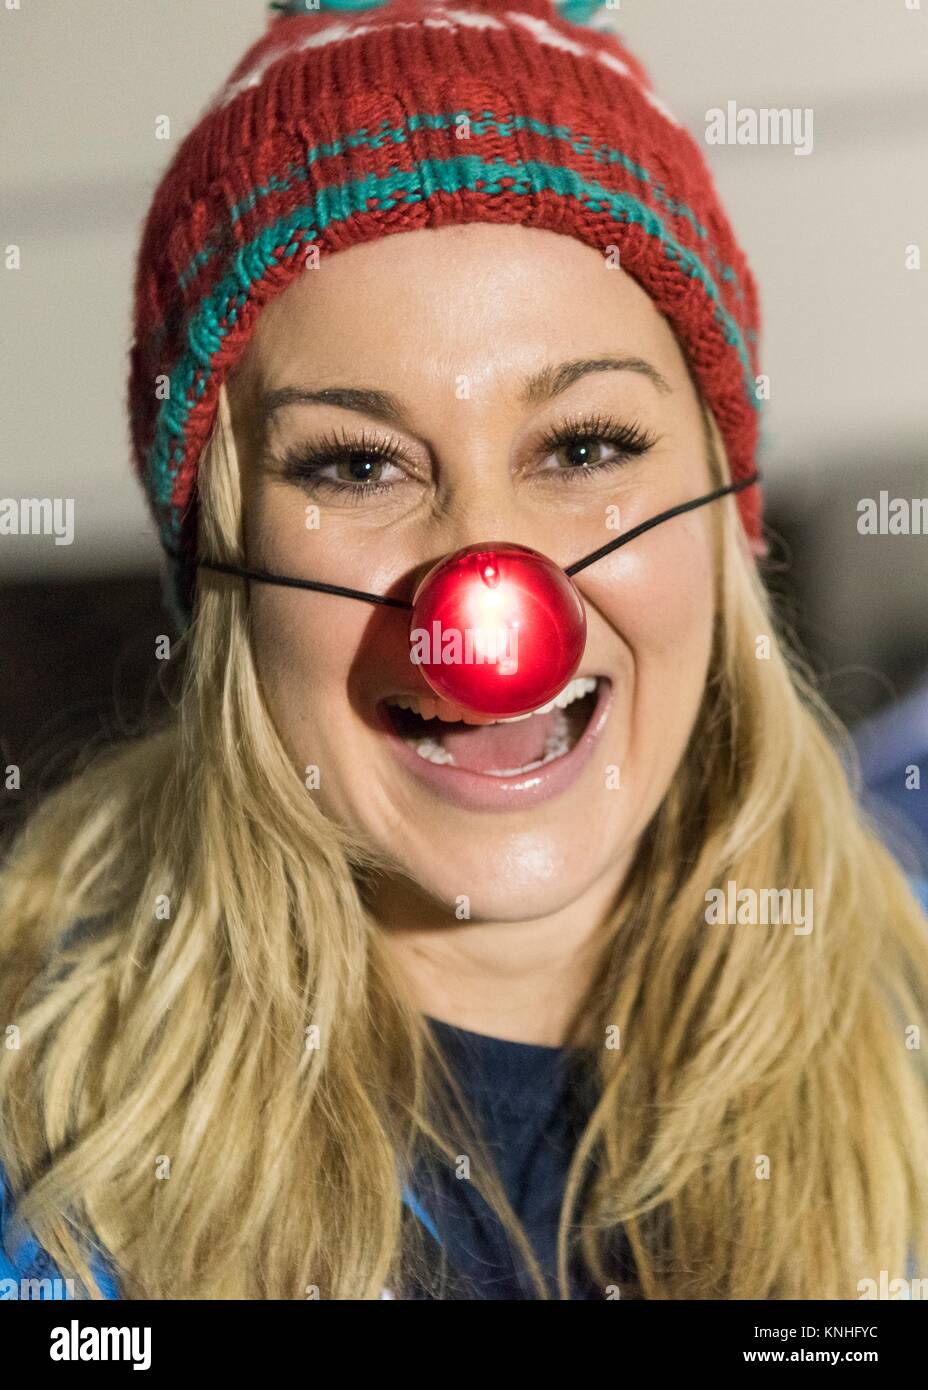 Country Music Singer Kellie Pickler trägt ein Rudolph The Red-Nosed Reindeer Nase, während sie für die US-Truppen während des CJCS USO Holiday Tour 25. Dezember im Irak 2016. (Foto von PO2 Dominique A. Pineiro über Planetpix) Stockfoto